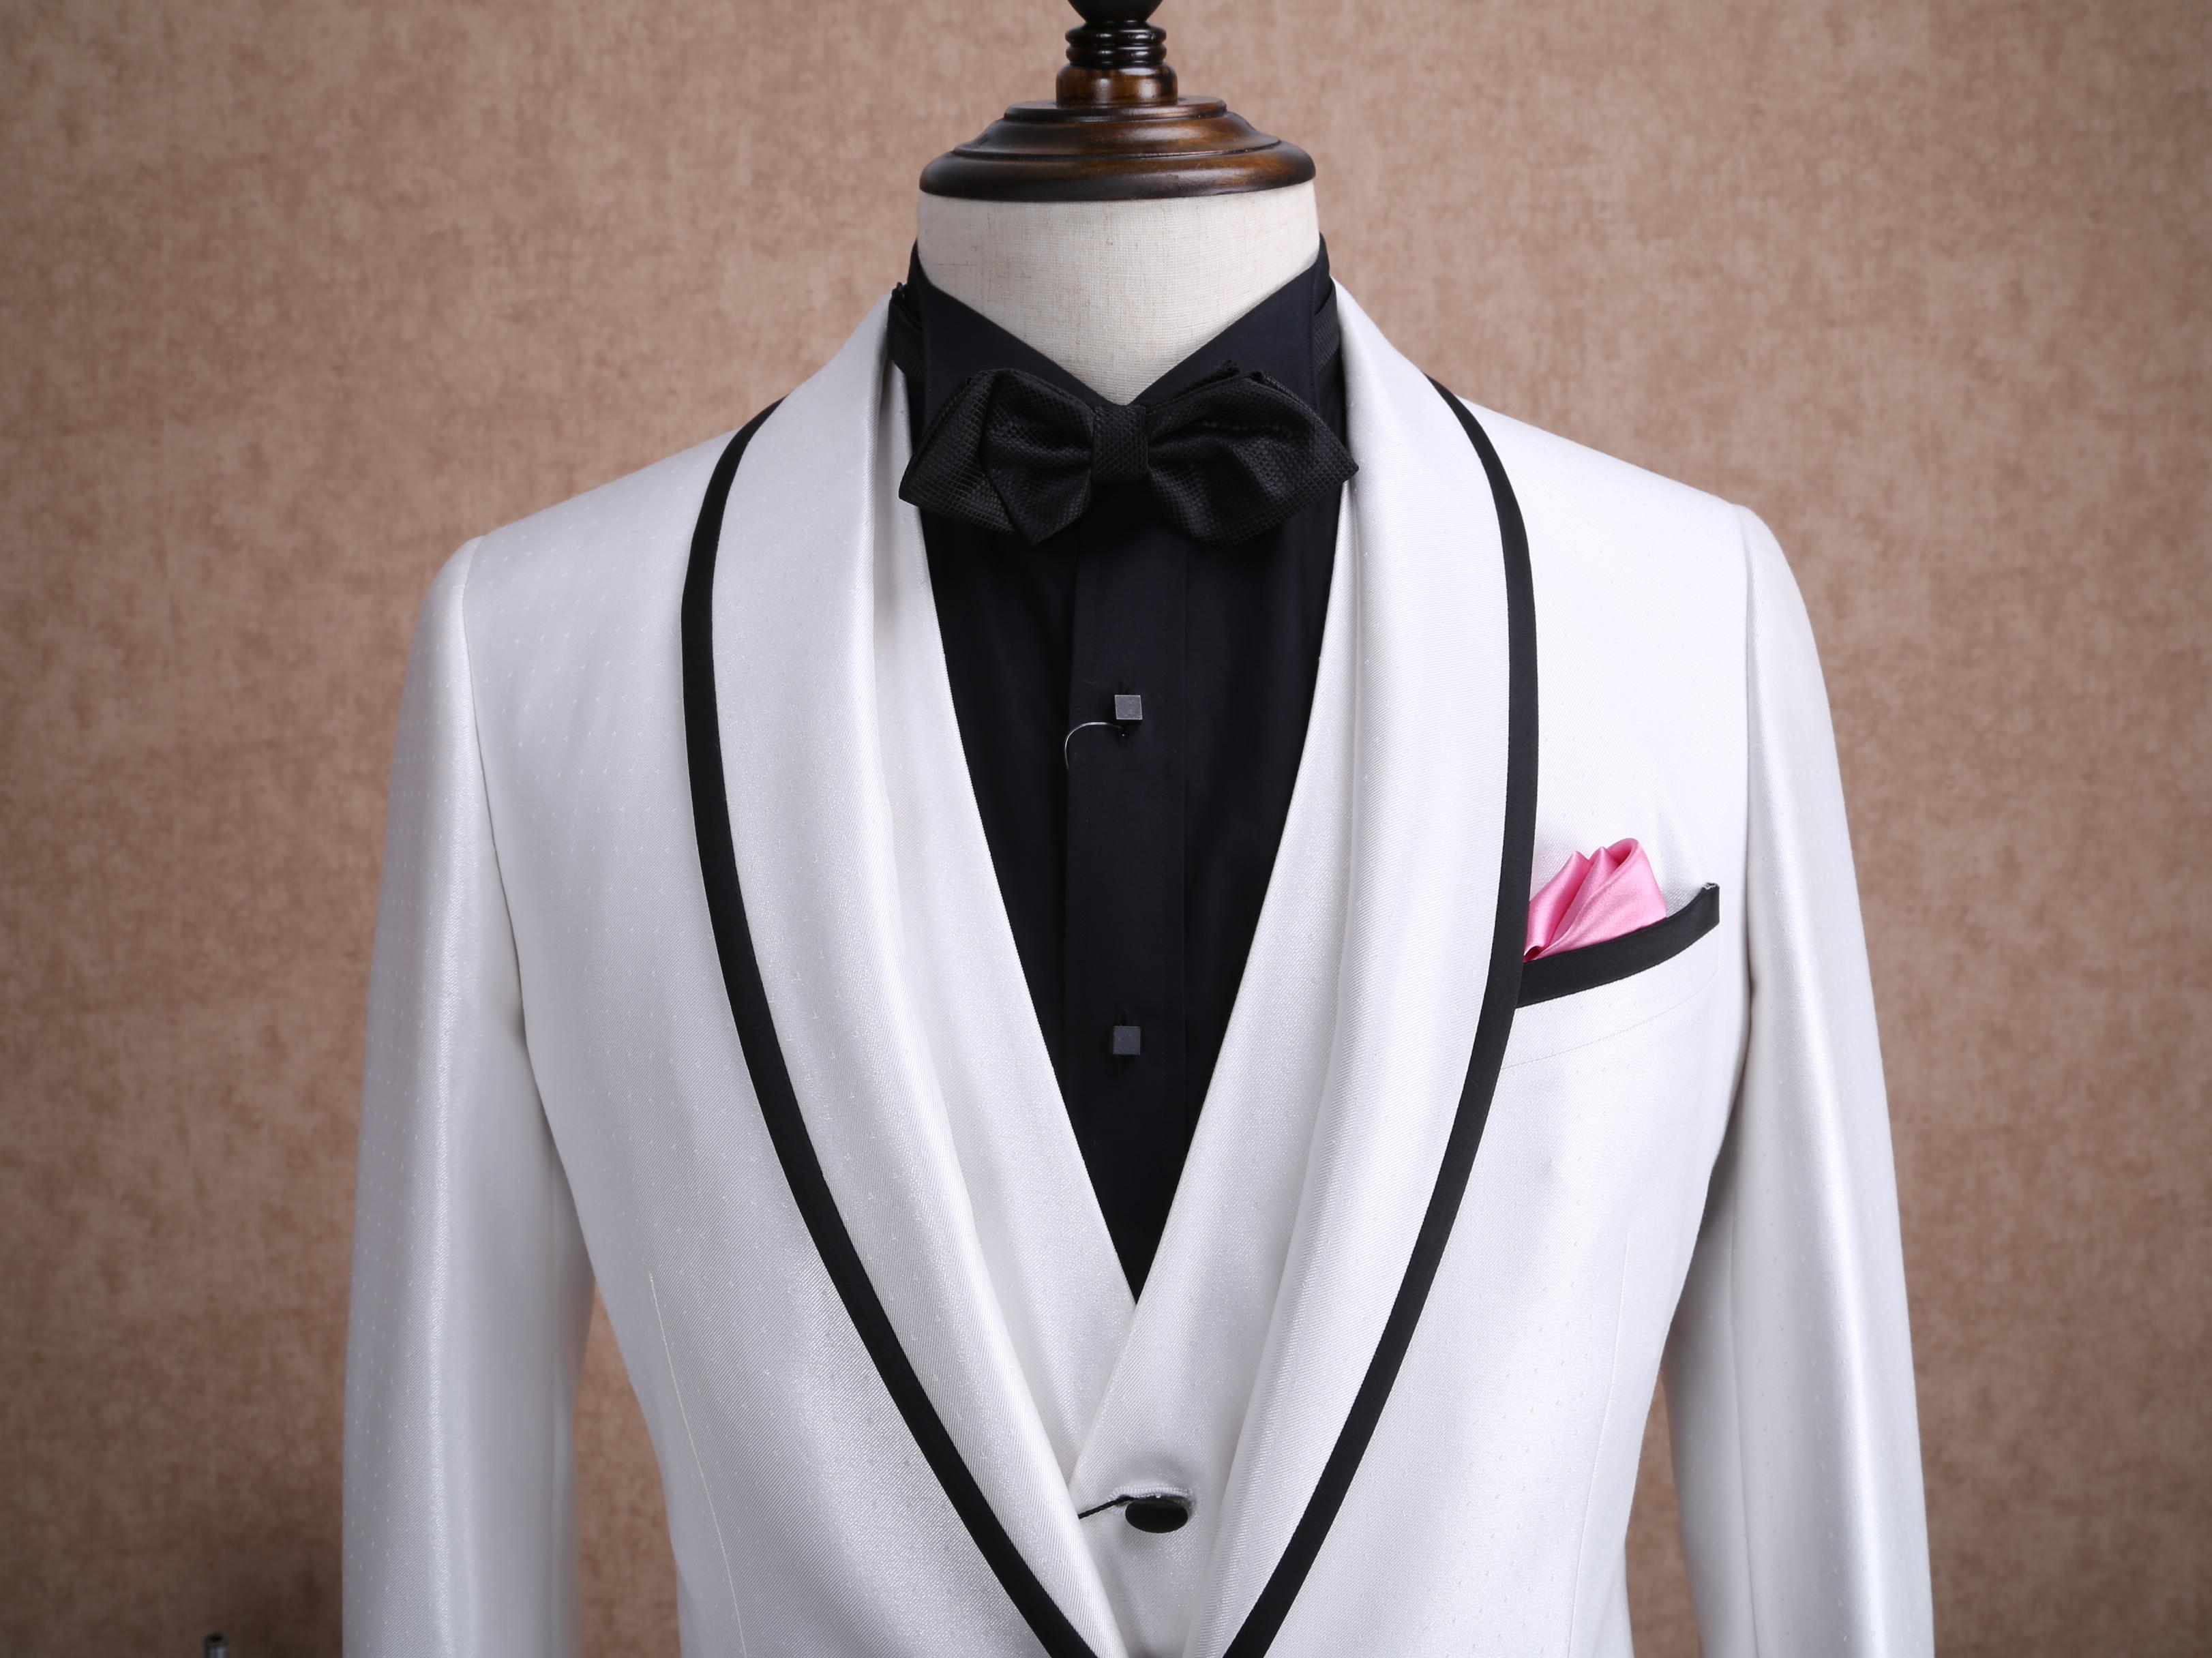 红领西服高级定制——白色青果领单排扣礼服套装